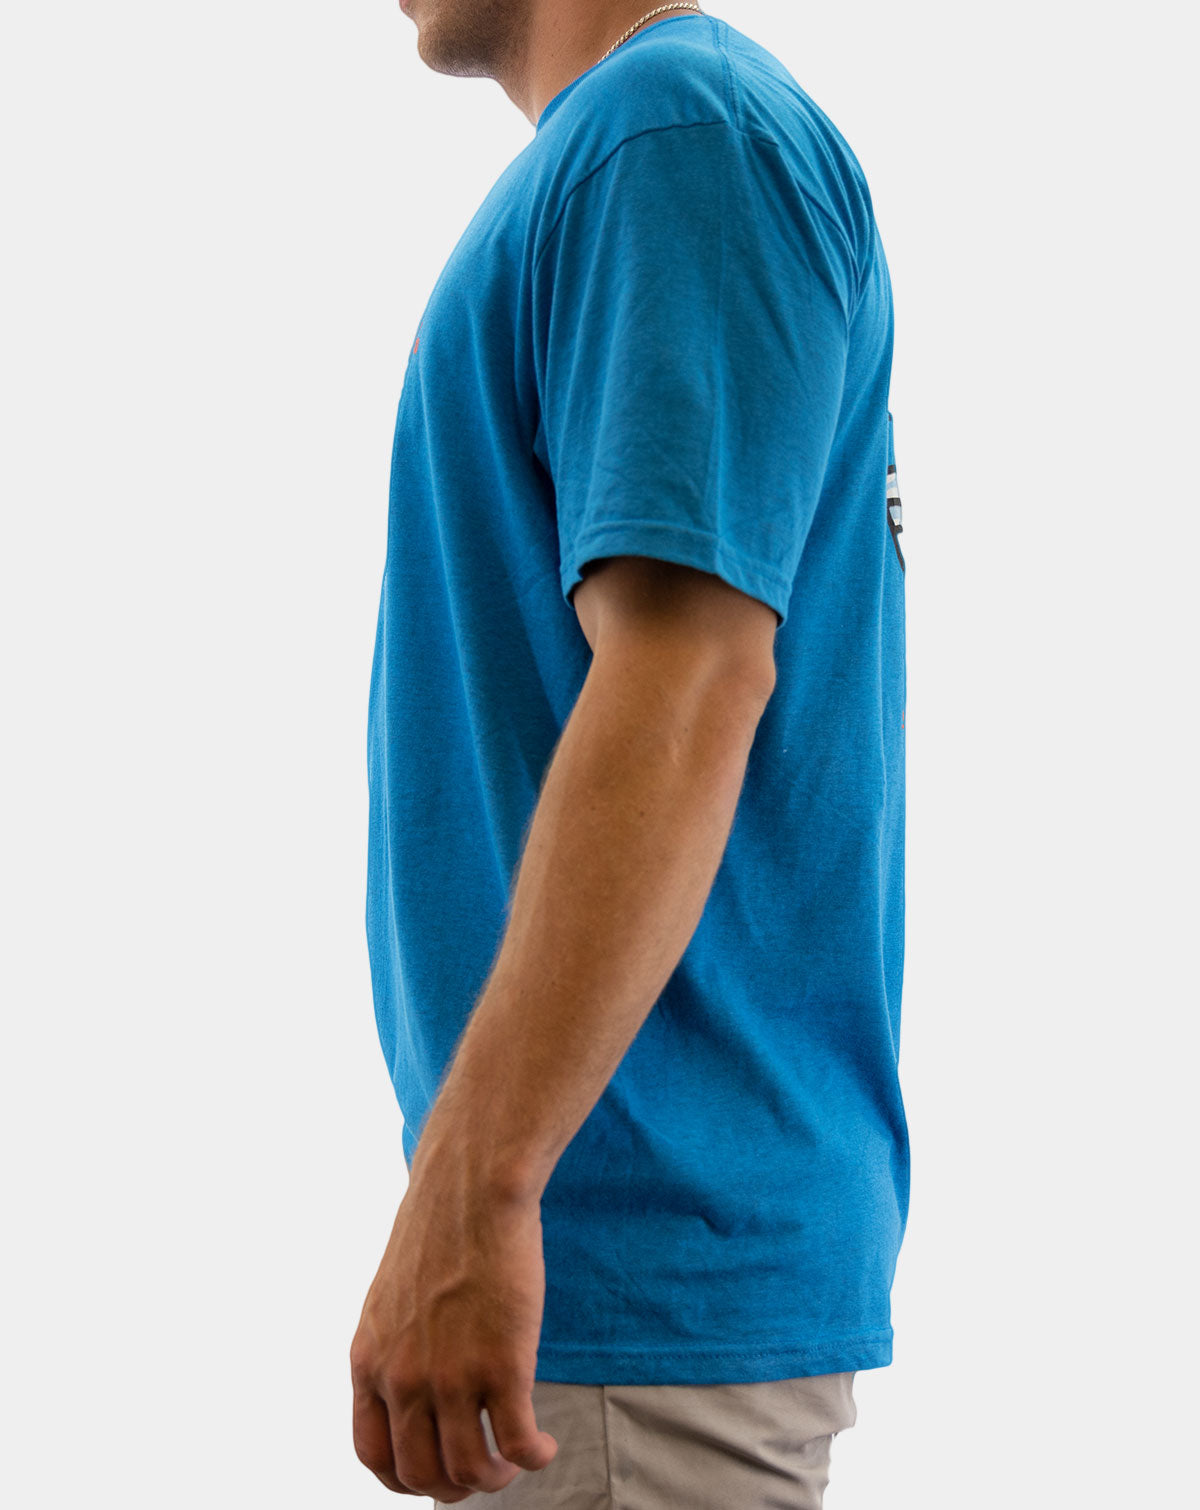 Tailer Swift - Reel Sportswear Fishing T-shirt